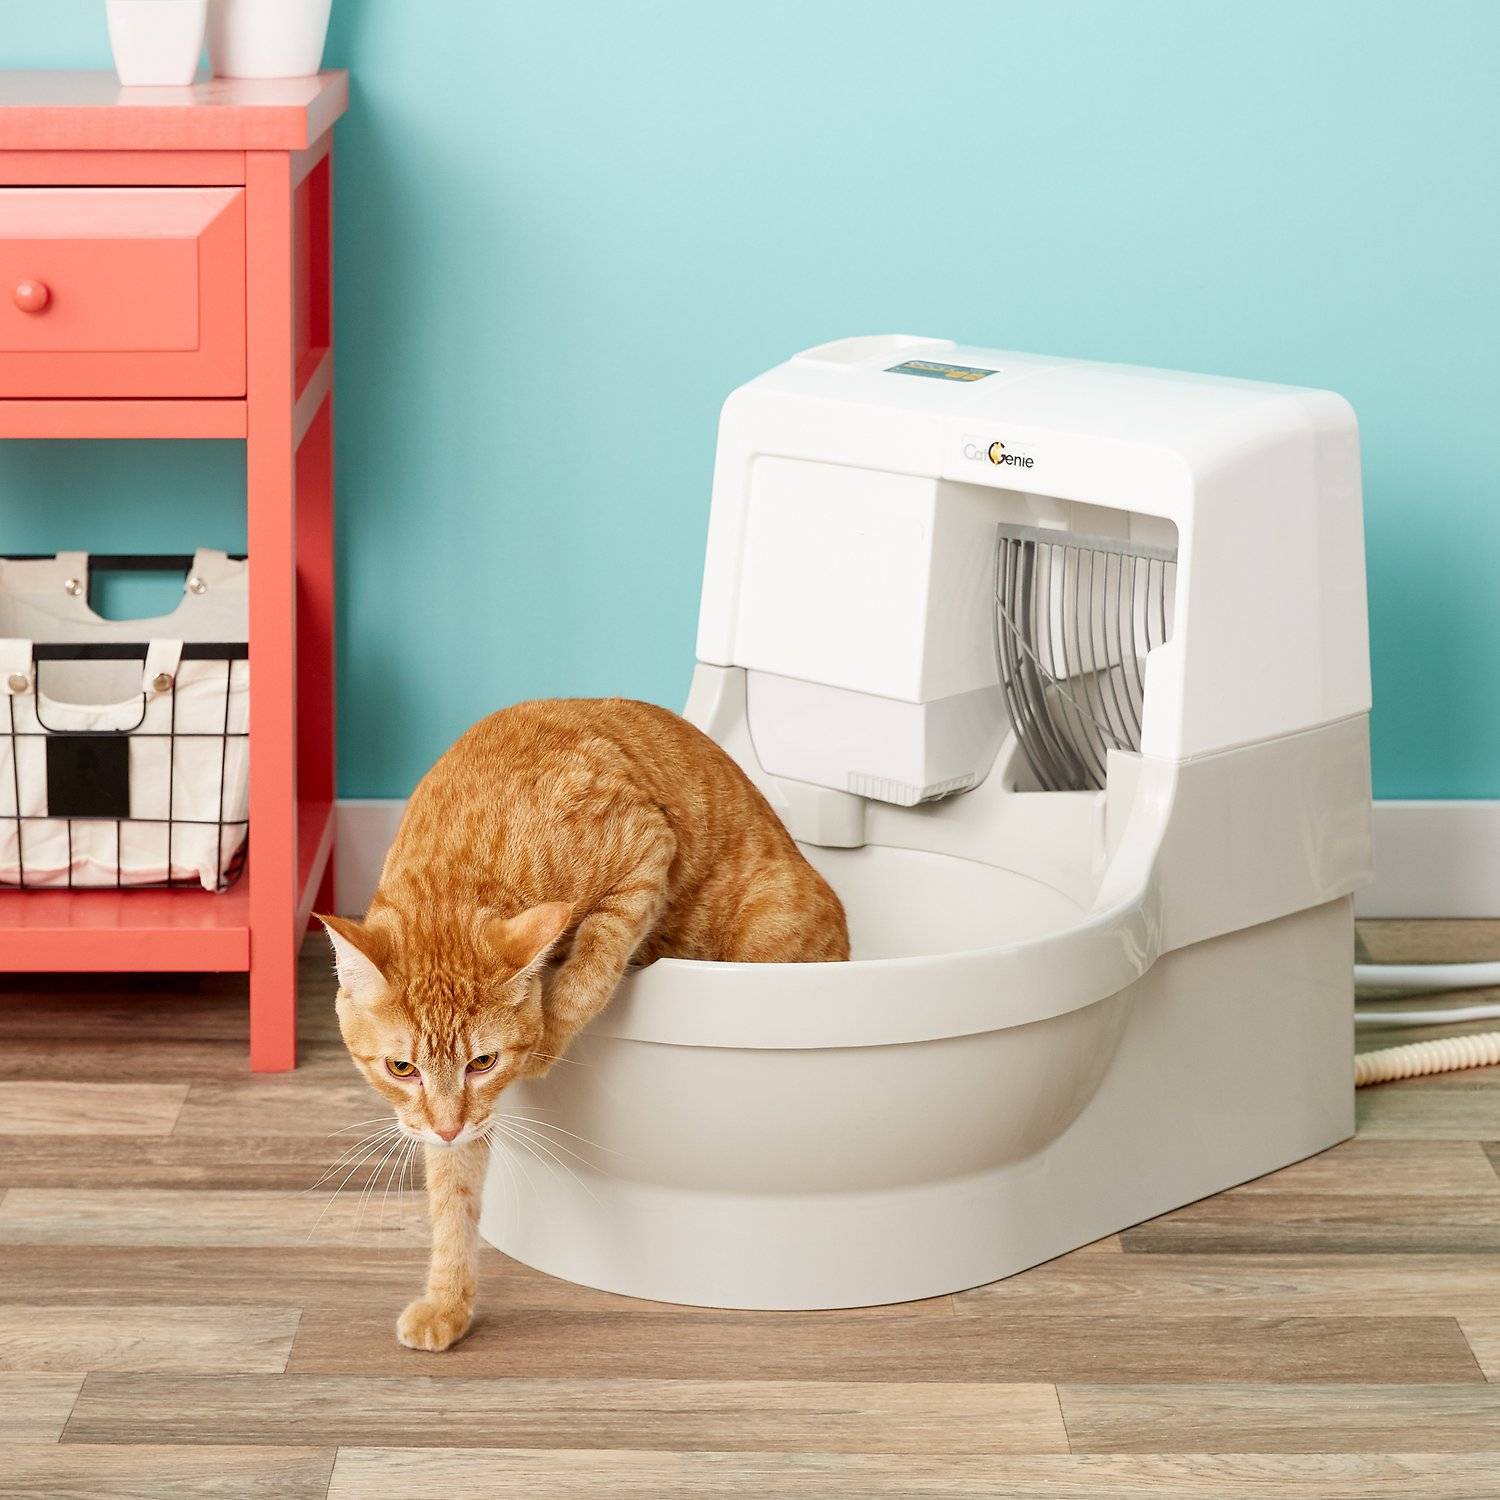 Биотуалет для кошки: плюсы и минусы самоочищающихся закрытых туалетов для кошек